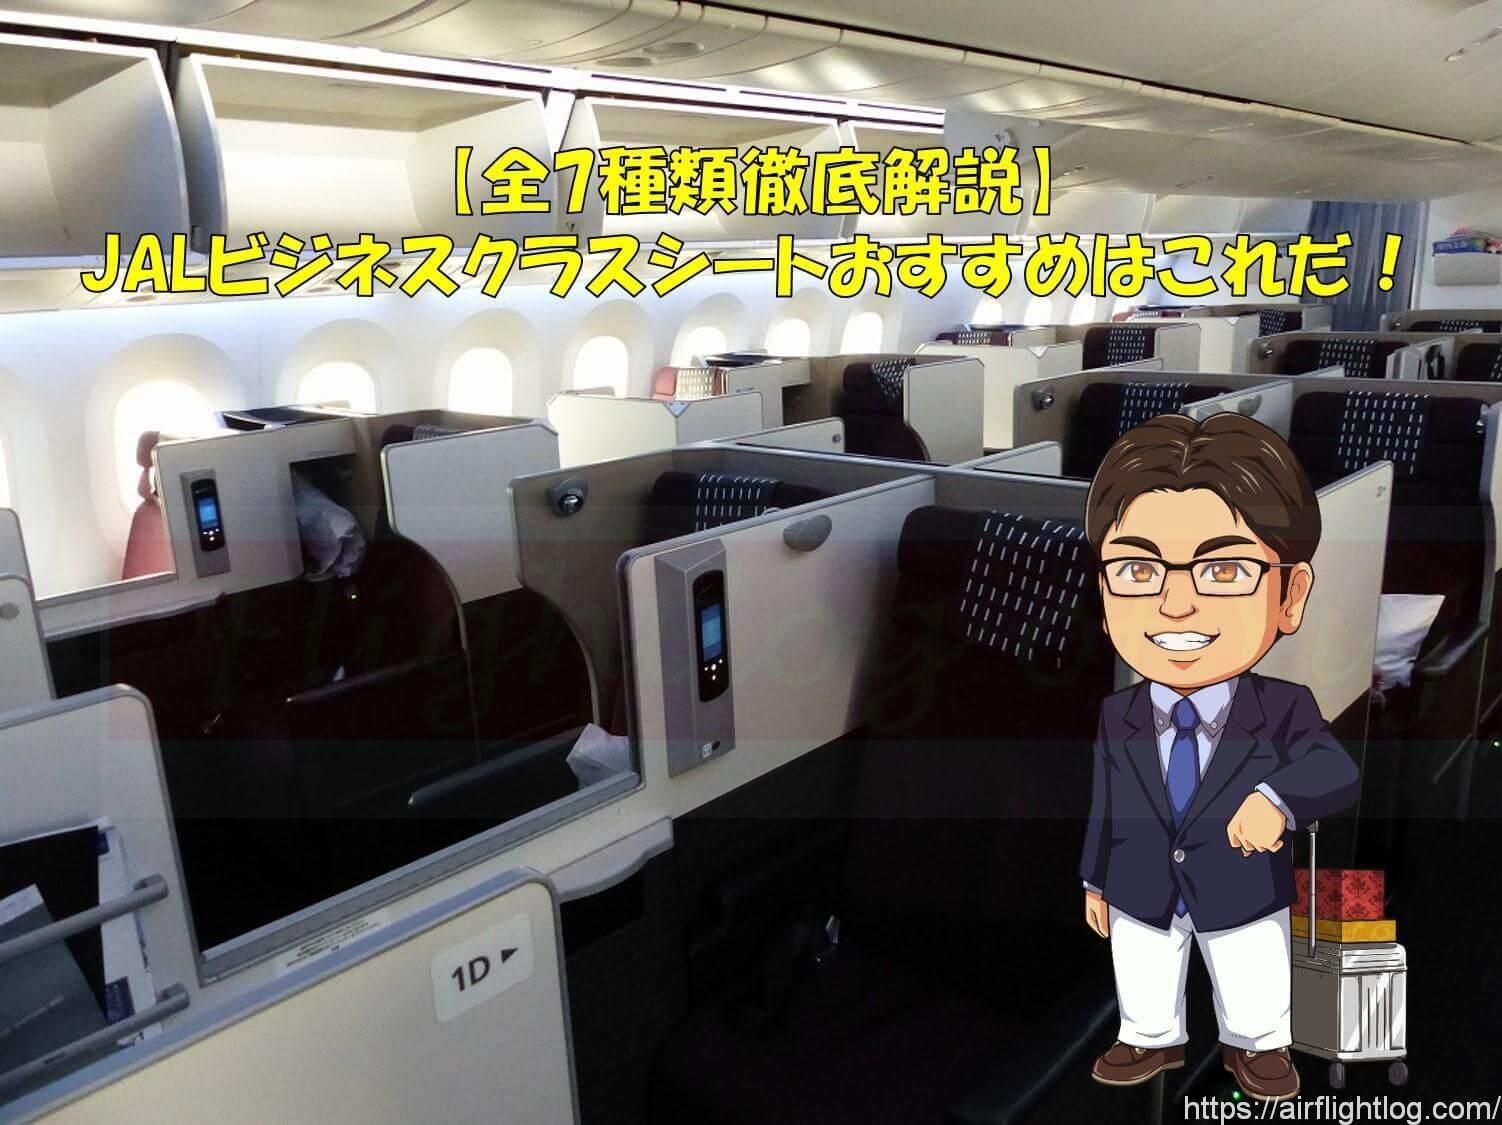 Jalビジネスクラスシート全座席解説 おすすめはこれだ Yujiのフライトログ